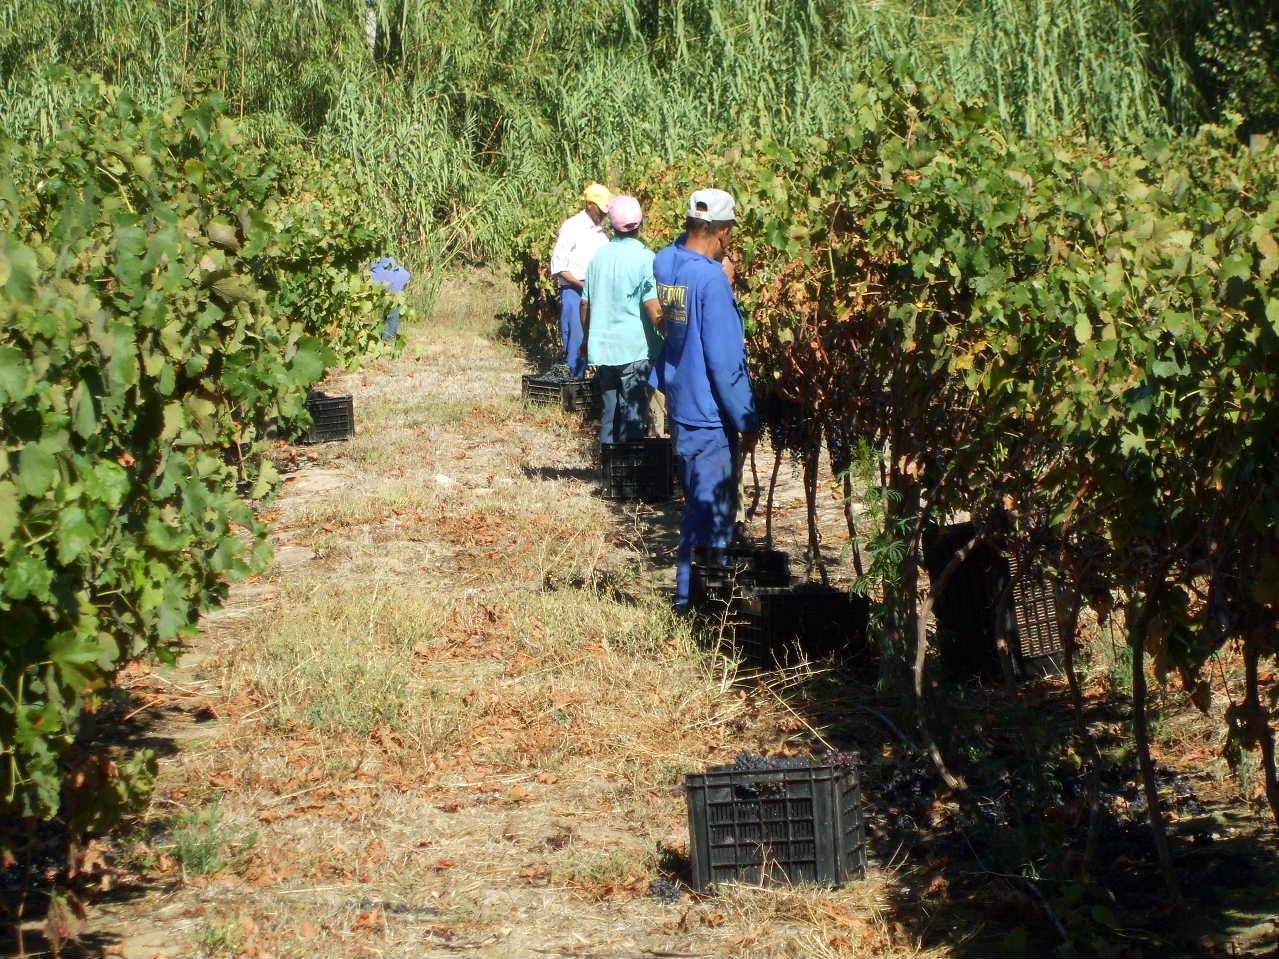 Our wine harvest crew